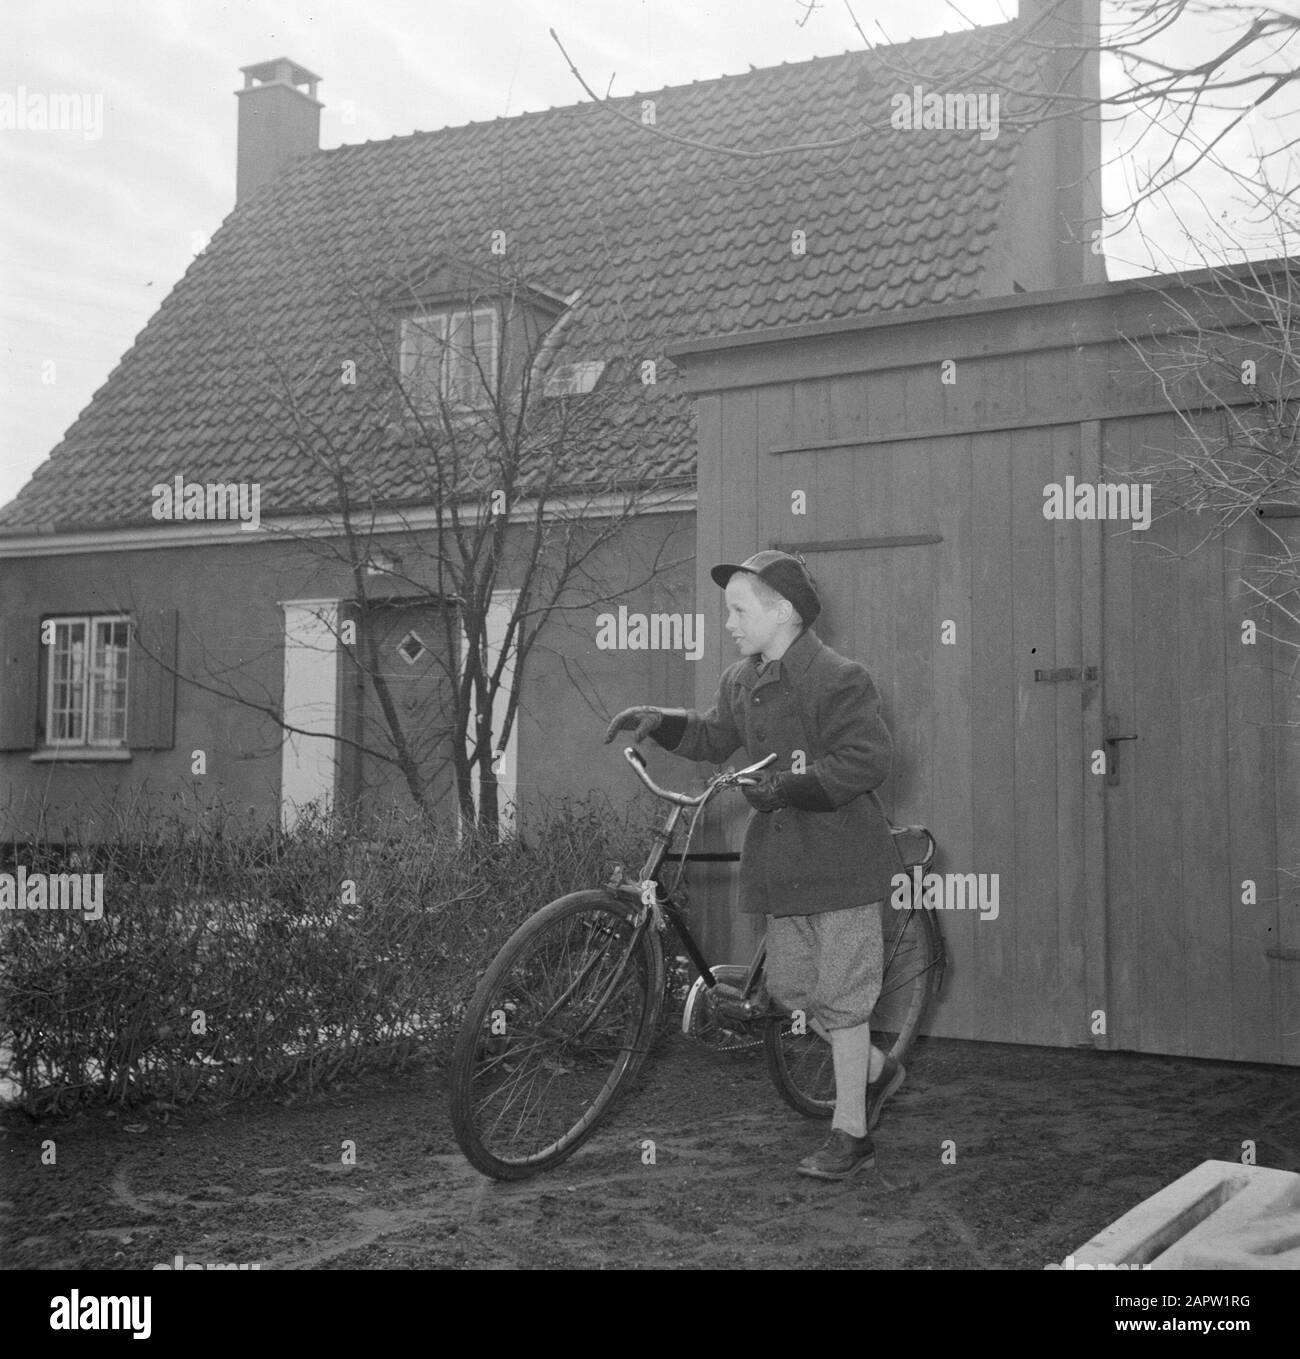 Familia en bicicleta Imágenes de stock en blanco y negro - Página 2 - Alamy